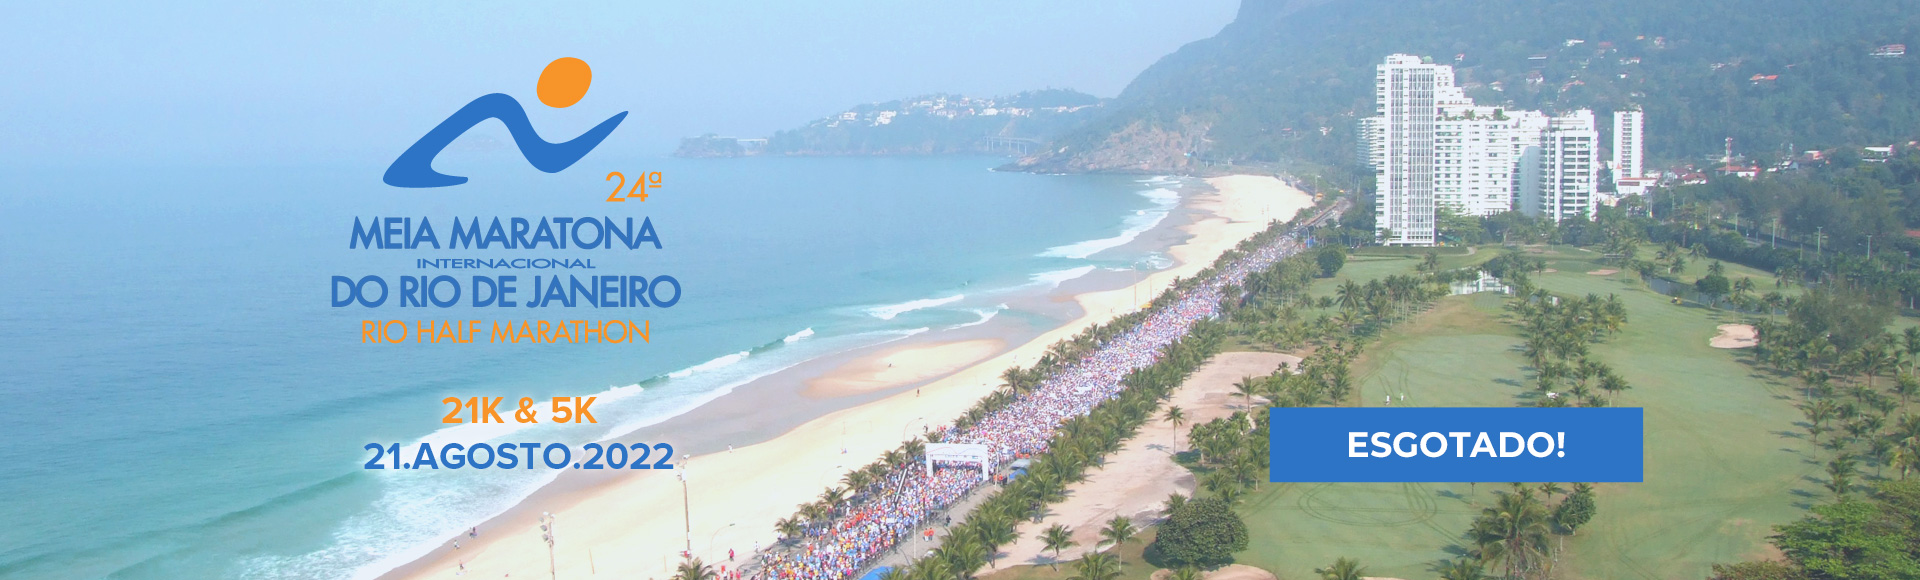 22ª Meia Maratona Internacional do Rio de Janeiro